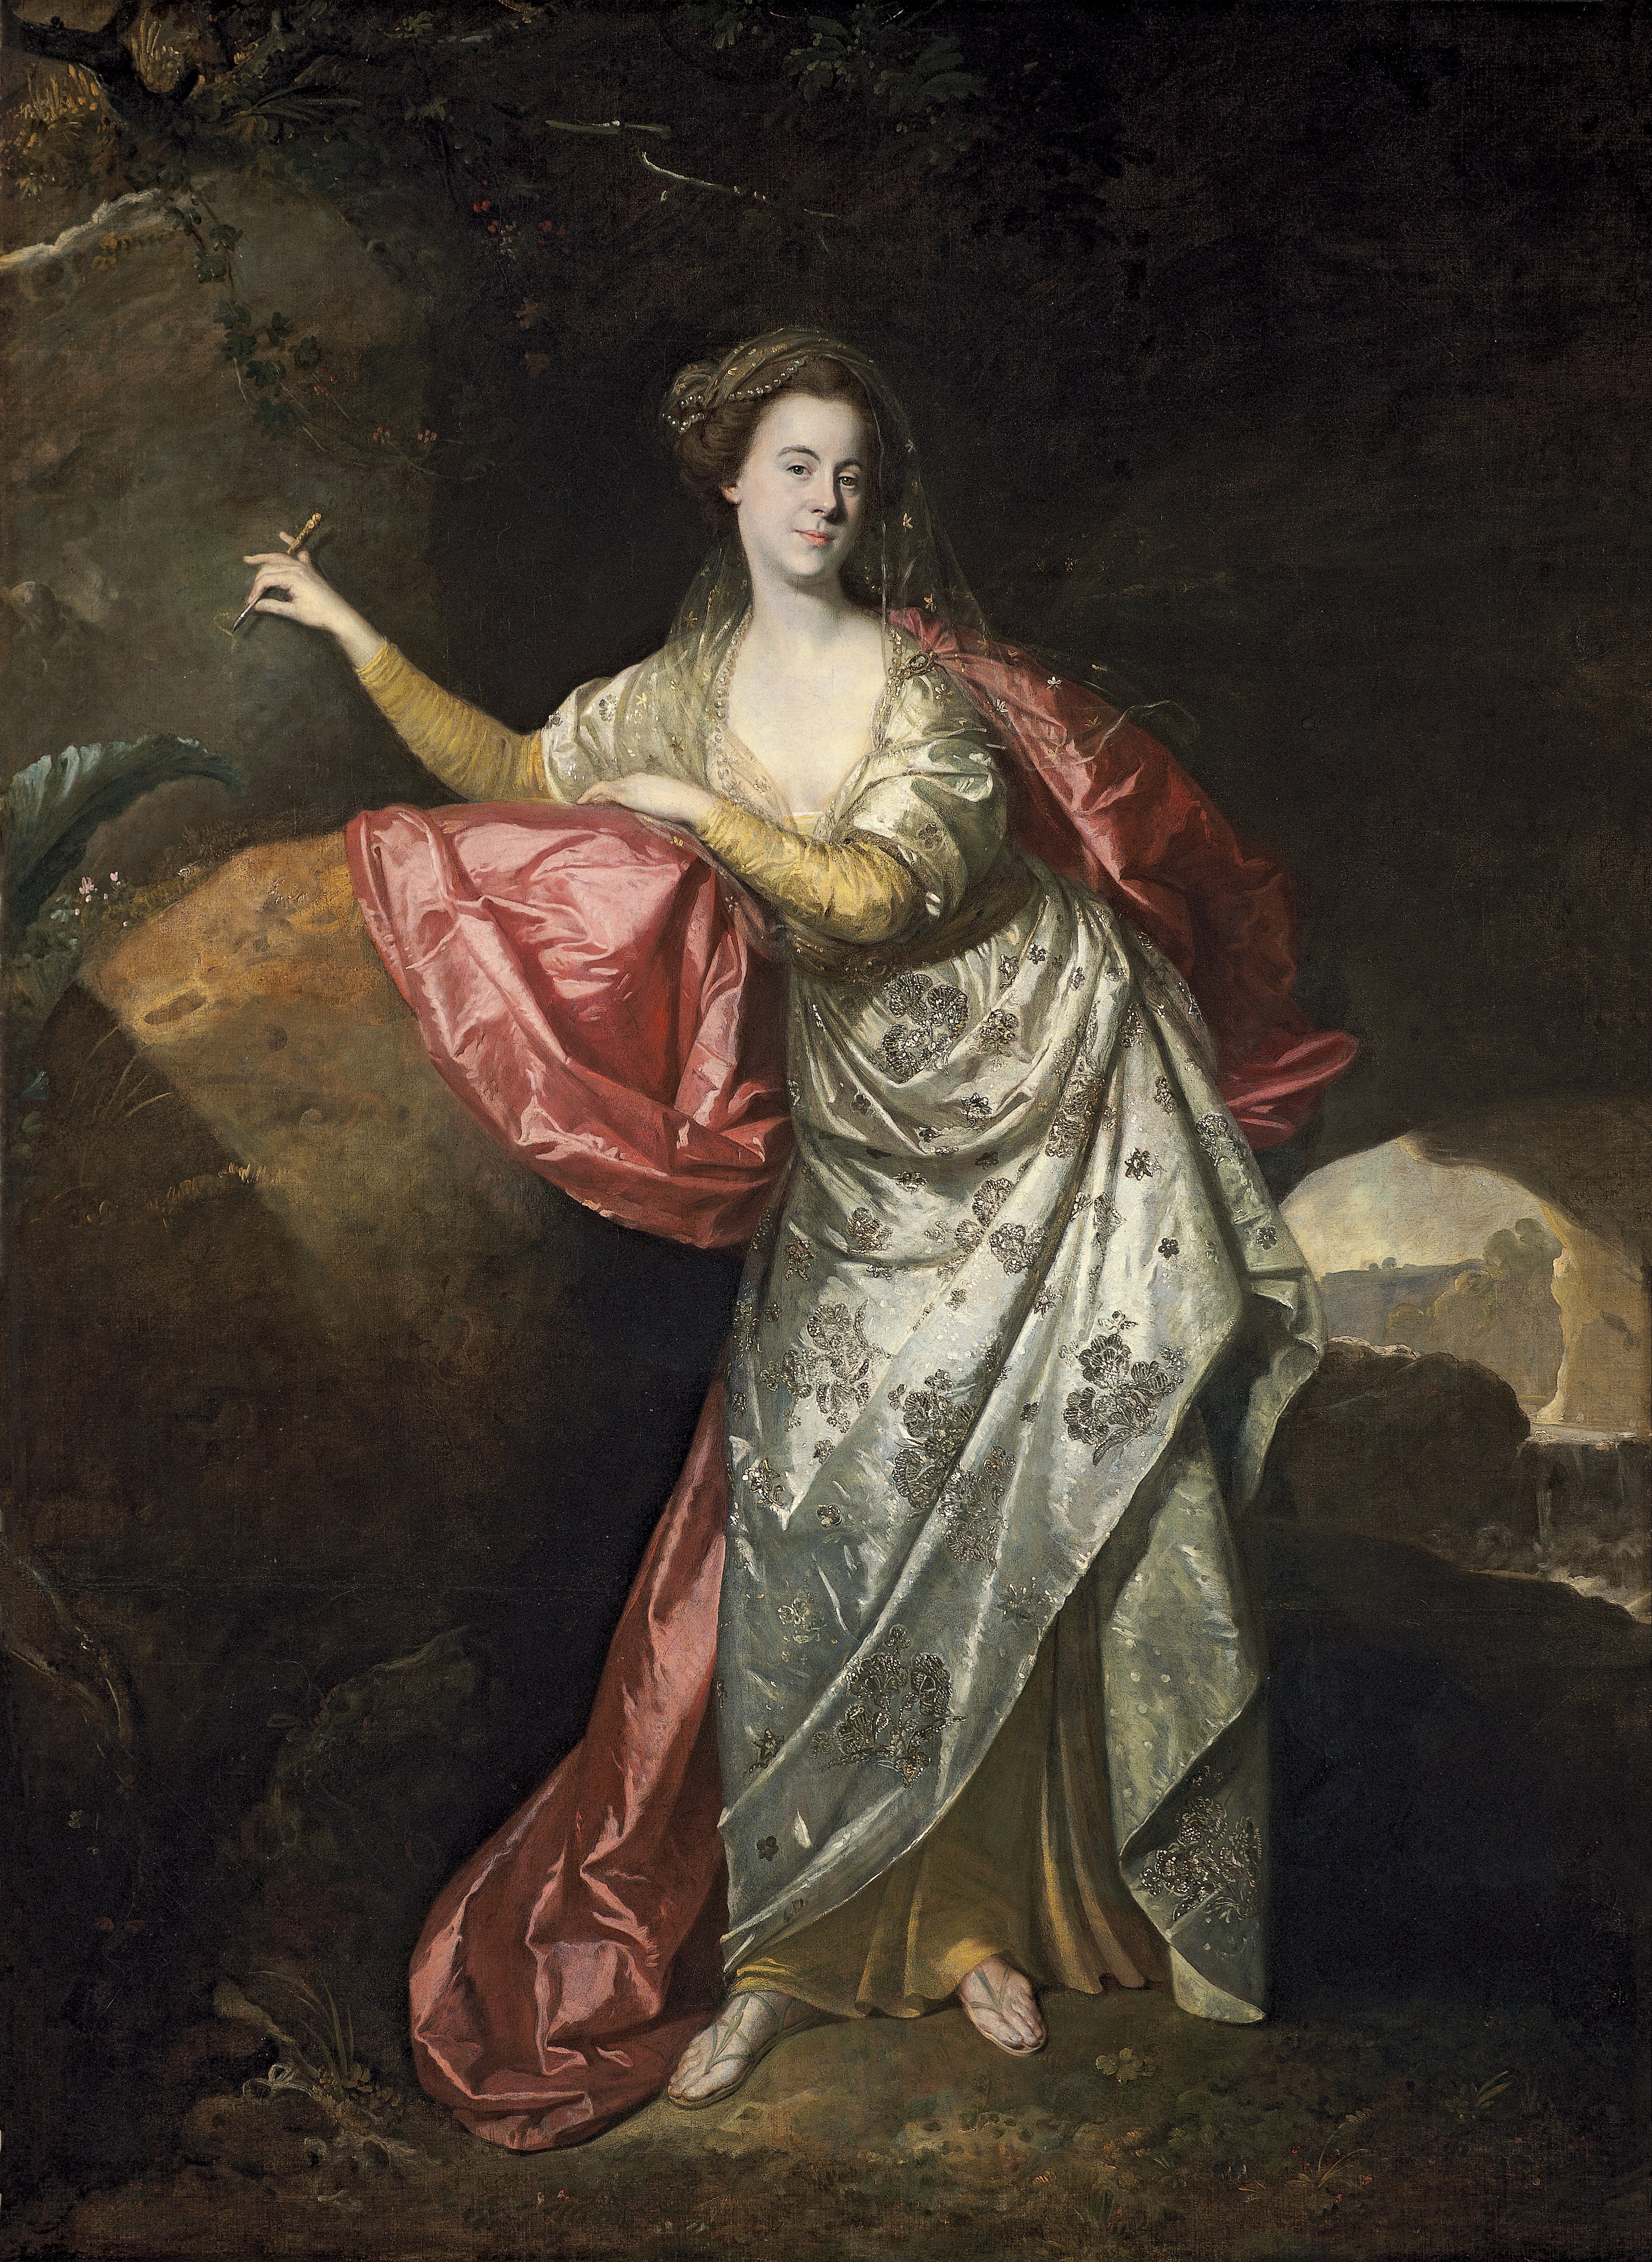 Portrait of Ann Brown in the Role of Miranda (?). Retrato de Ann Brown en el papel de Miranda (?), c. 1770